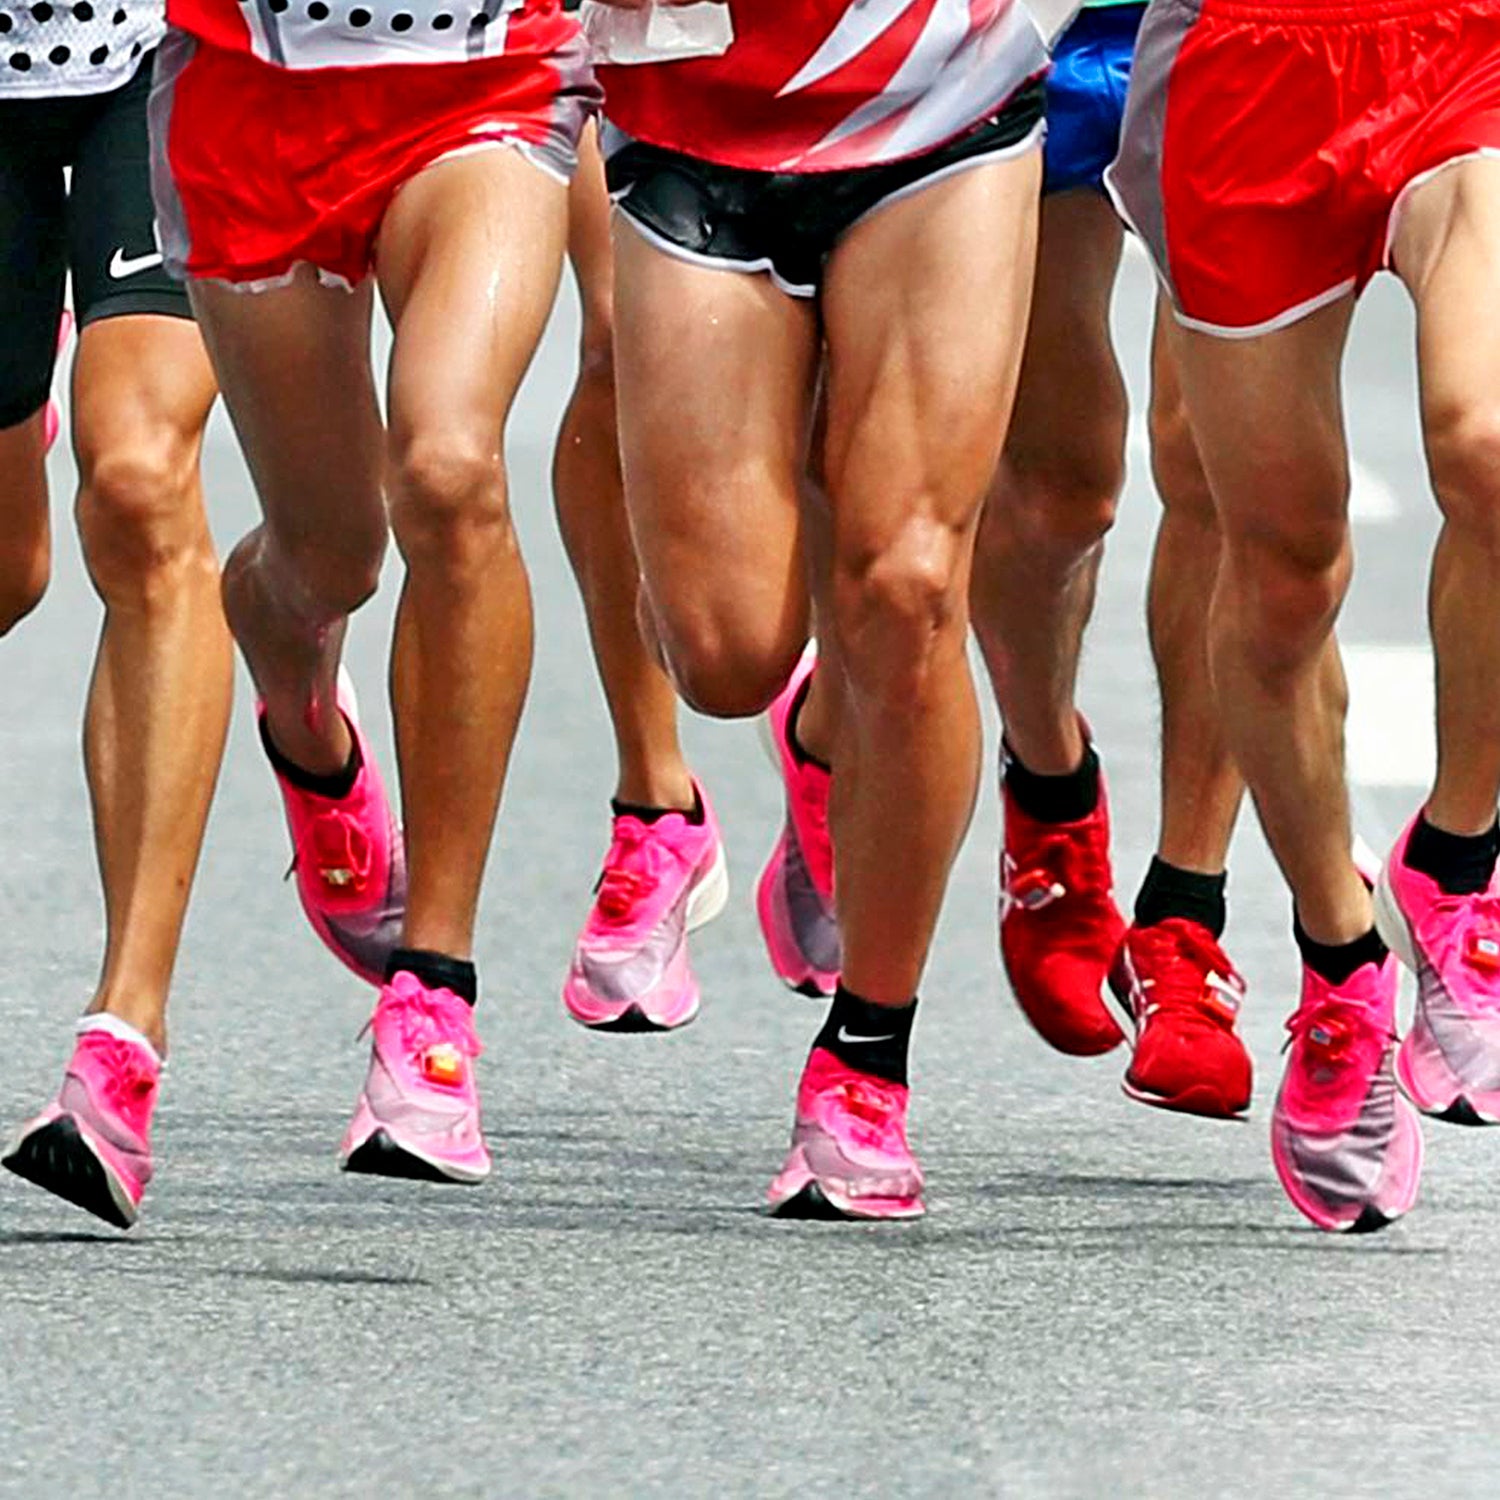 https://cdn.outsideonline.com/wp-content/uploads/2022/09/runners-pink-nike-vaporfly-race_s.jpg